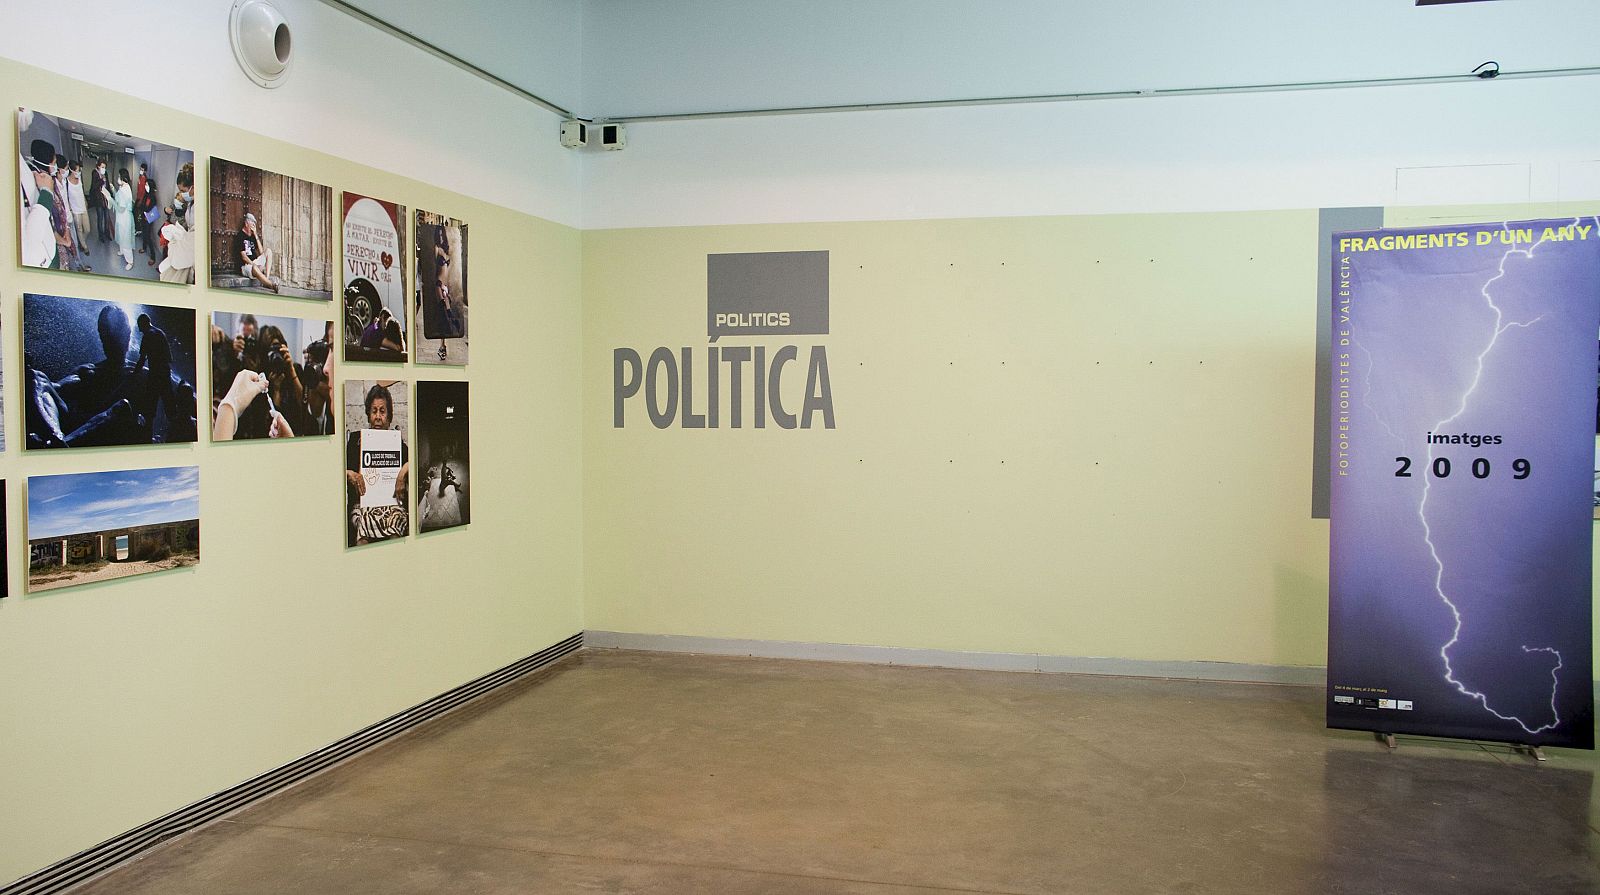 LA UNIÓ DE PERIODISTES RETIRA SU EXPOSICIÓN DEL MUVIM ANTE "CENSURA POLÍTICA"